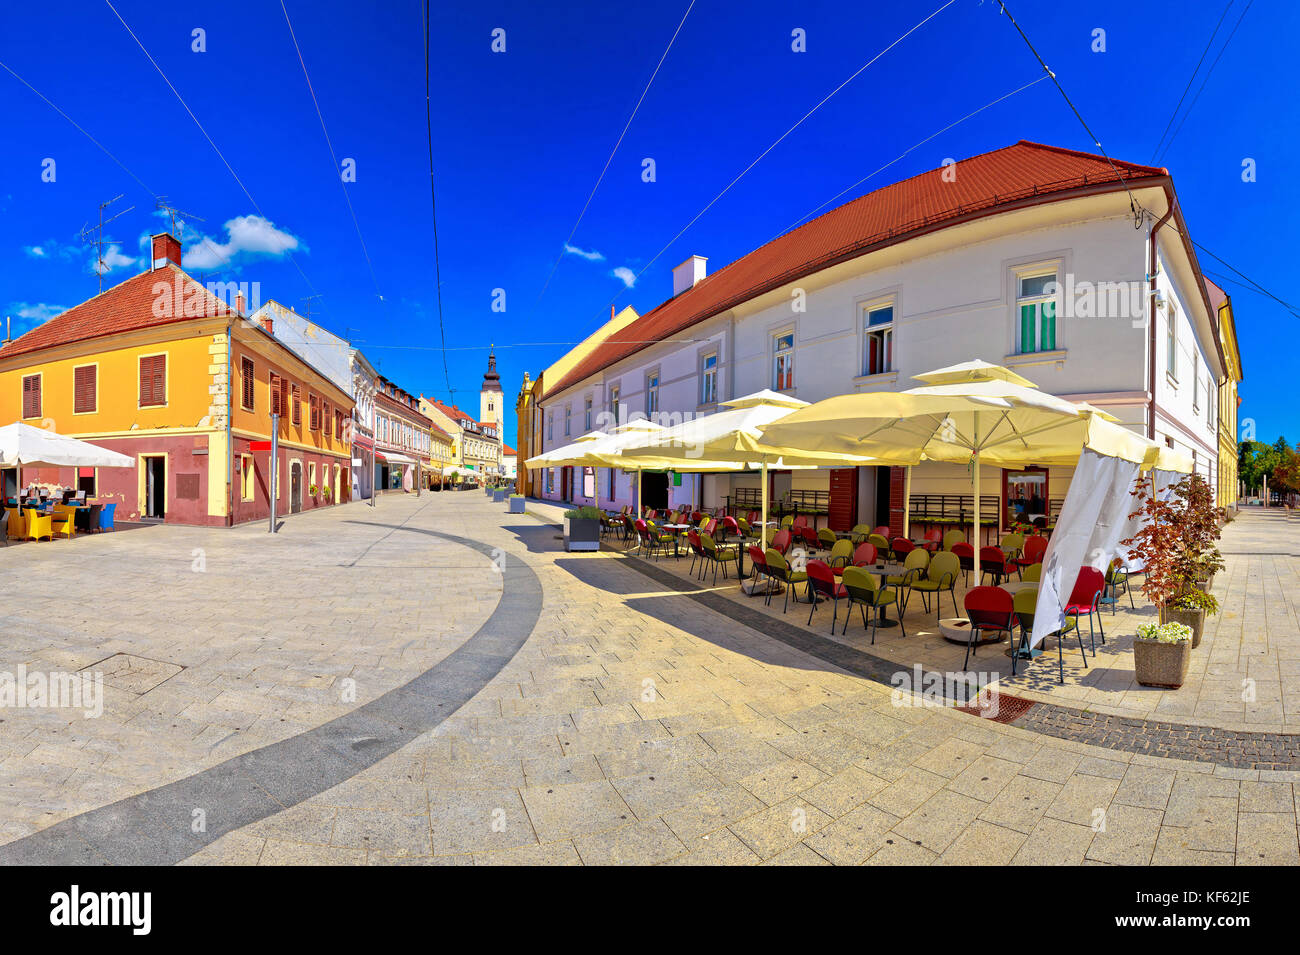 Stadt Cakovec Square und Sehenswürdigkeiten Panoramablick, medjimurje Region von Kroatien Stockfoto